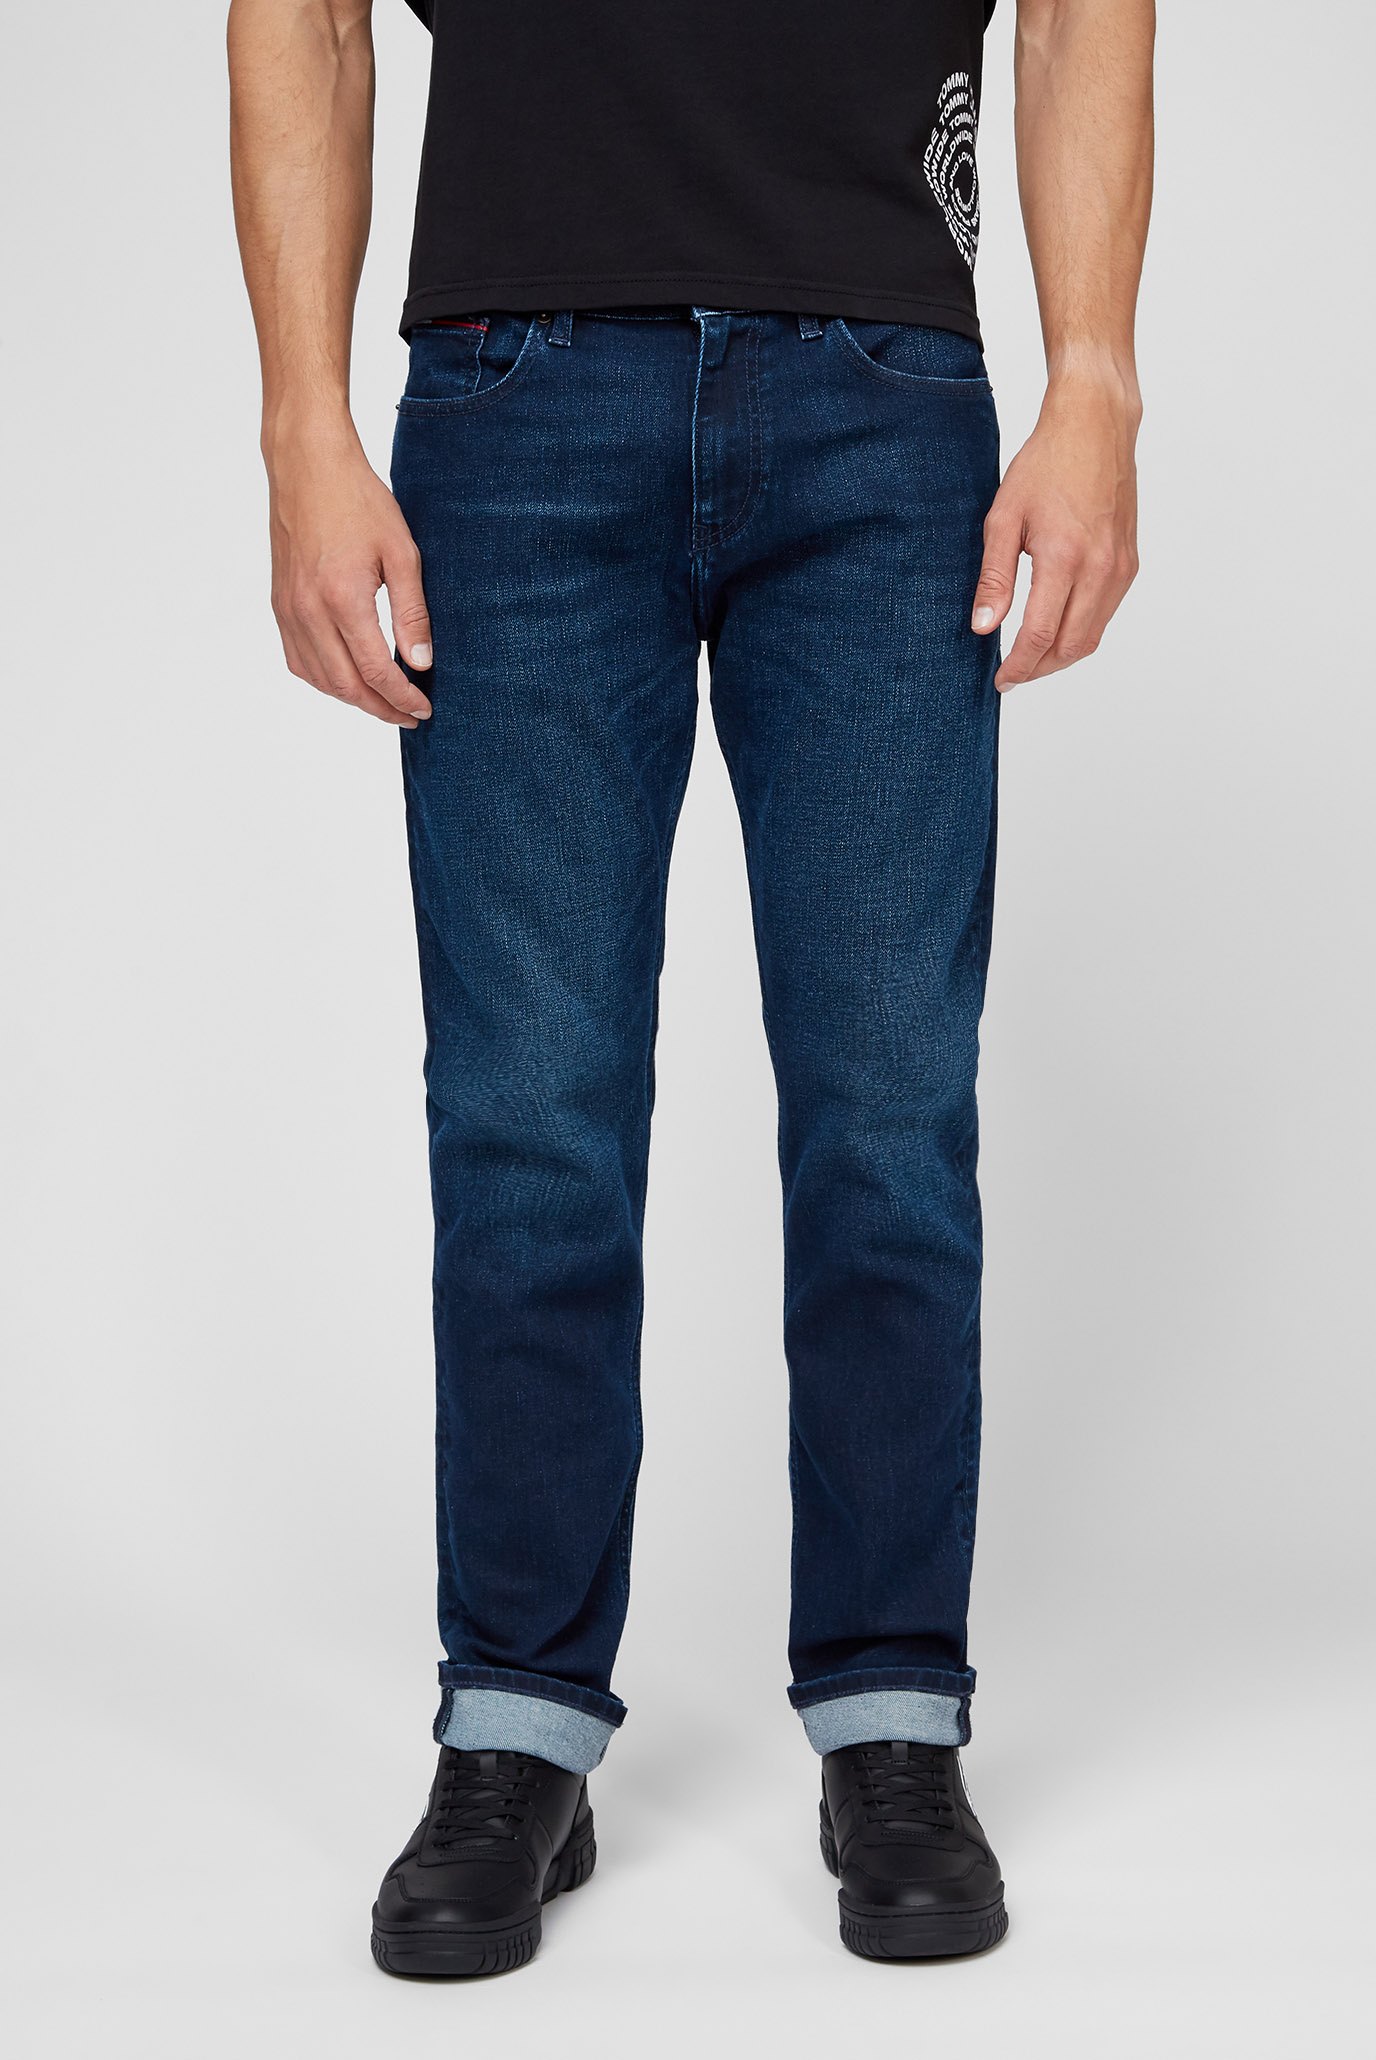 Мужские синие джинсы RYAN REG STGHT BE162 1